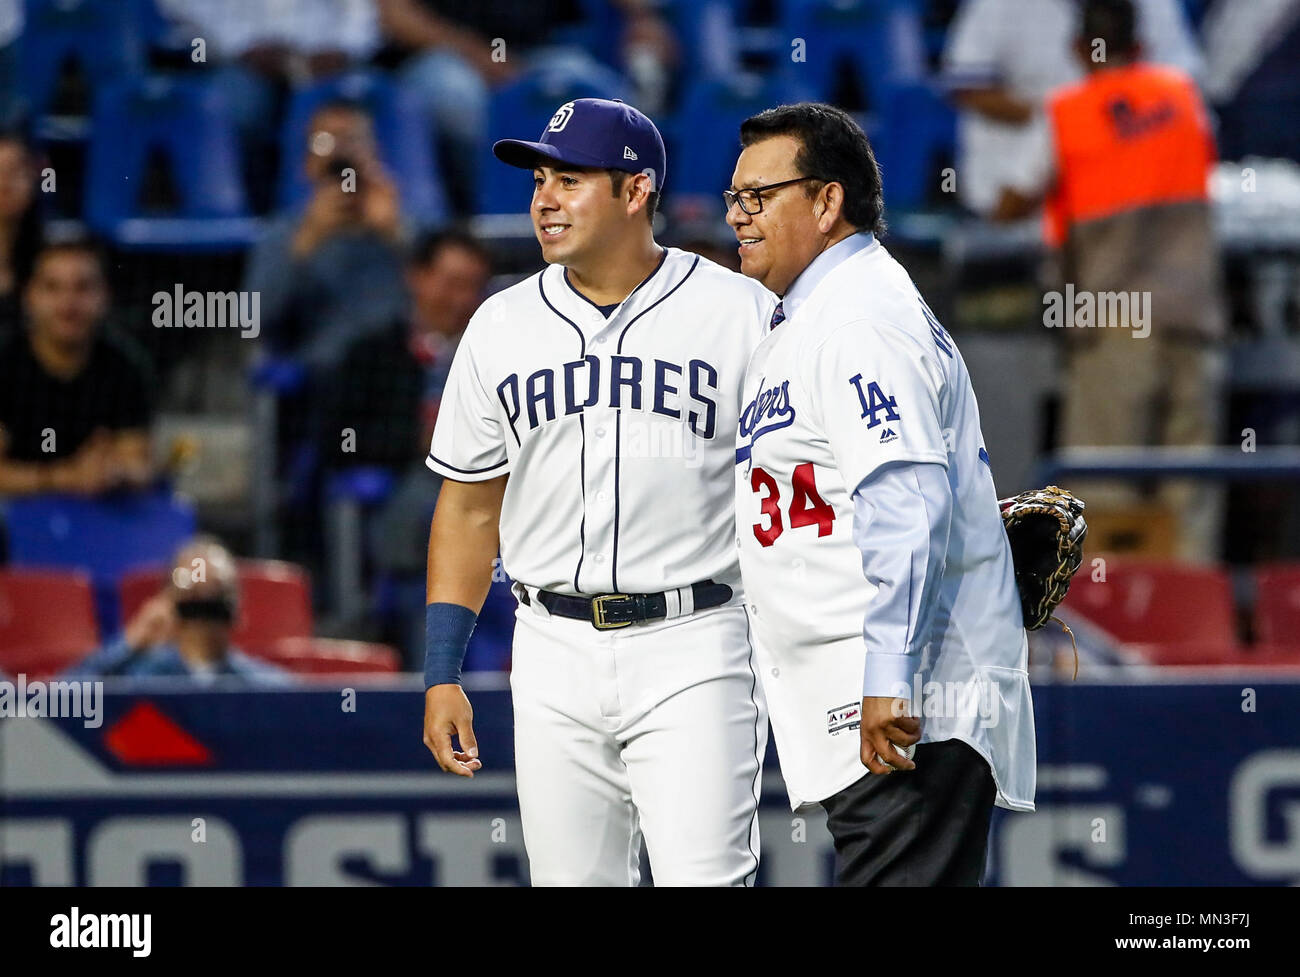 Fernando Valenzuela acompañado de Christian Villanueva,  lanza la primera bola para el playball del partido de beisbol de los Dodgers de Los Angeles contra Padres de San Diego, durante el primer juego de la serie las Ligas Mayores del Beisbol en Monterrey, Mexico el 4 de Mayo 2018. (Photo: Luis Gutierrez) Stock Photo